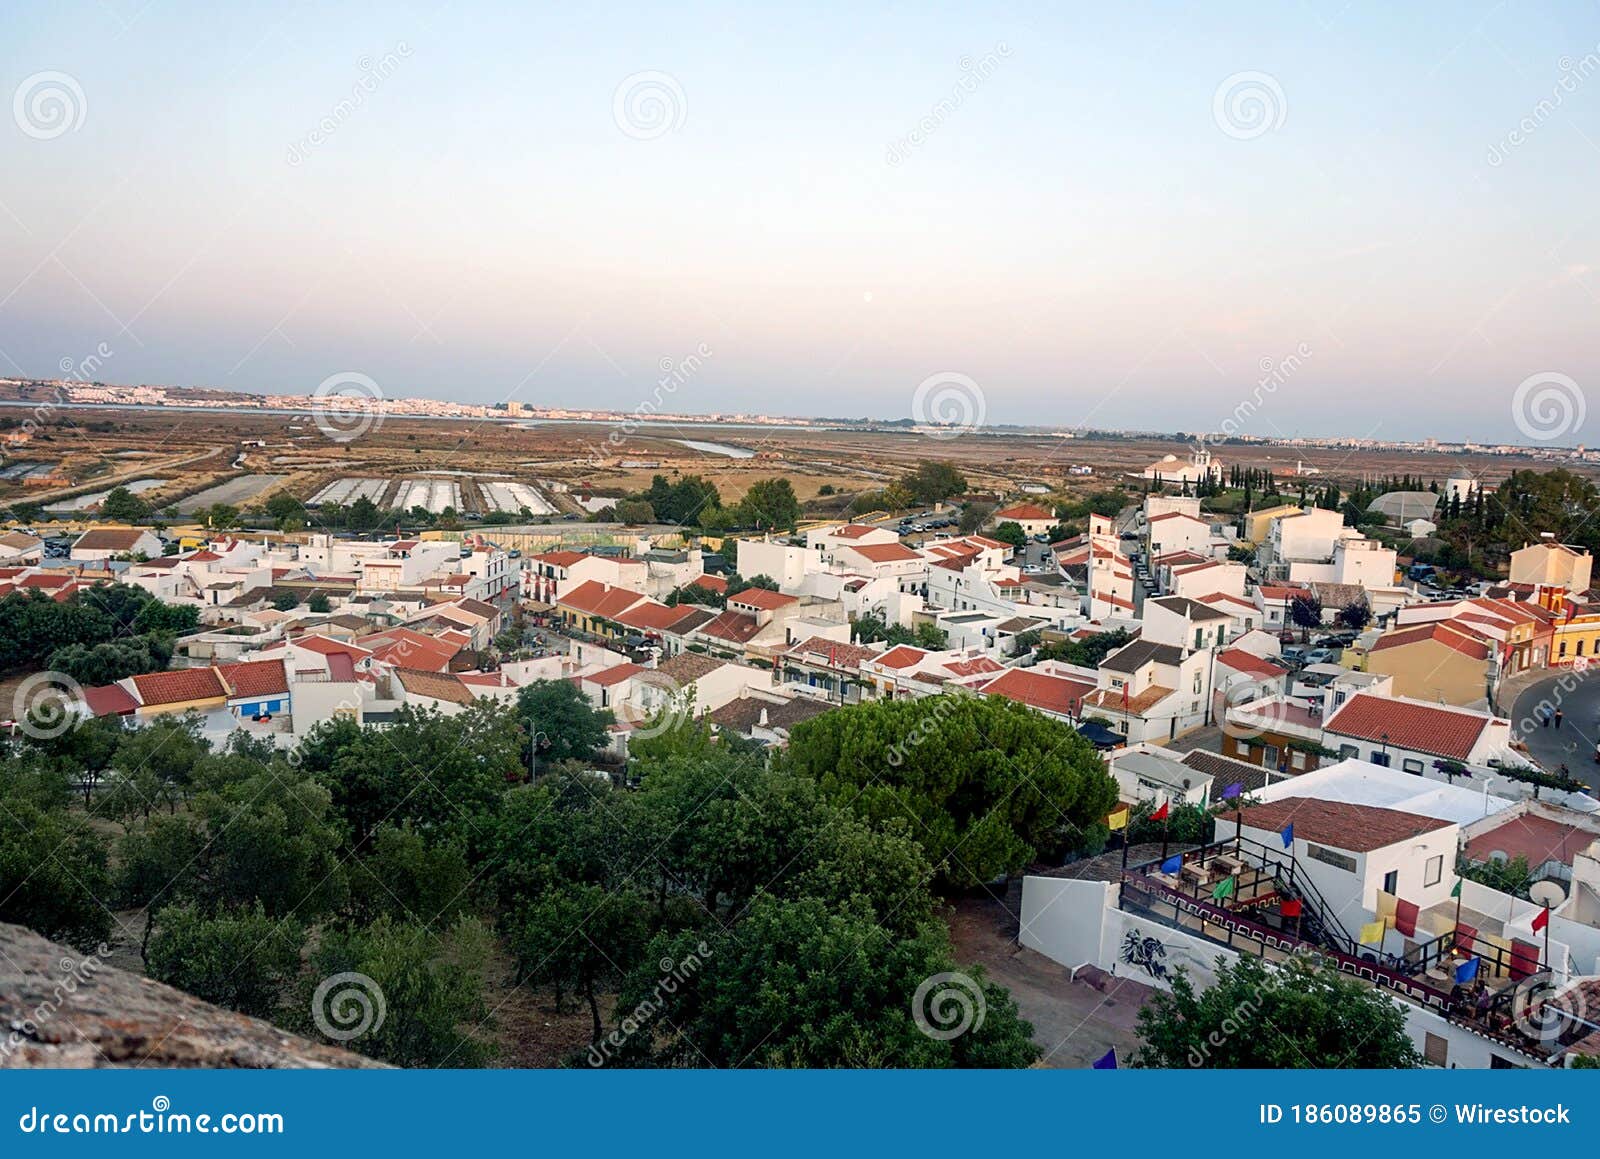 pueblo de montegordo en portugal